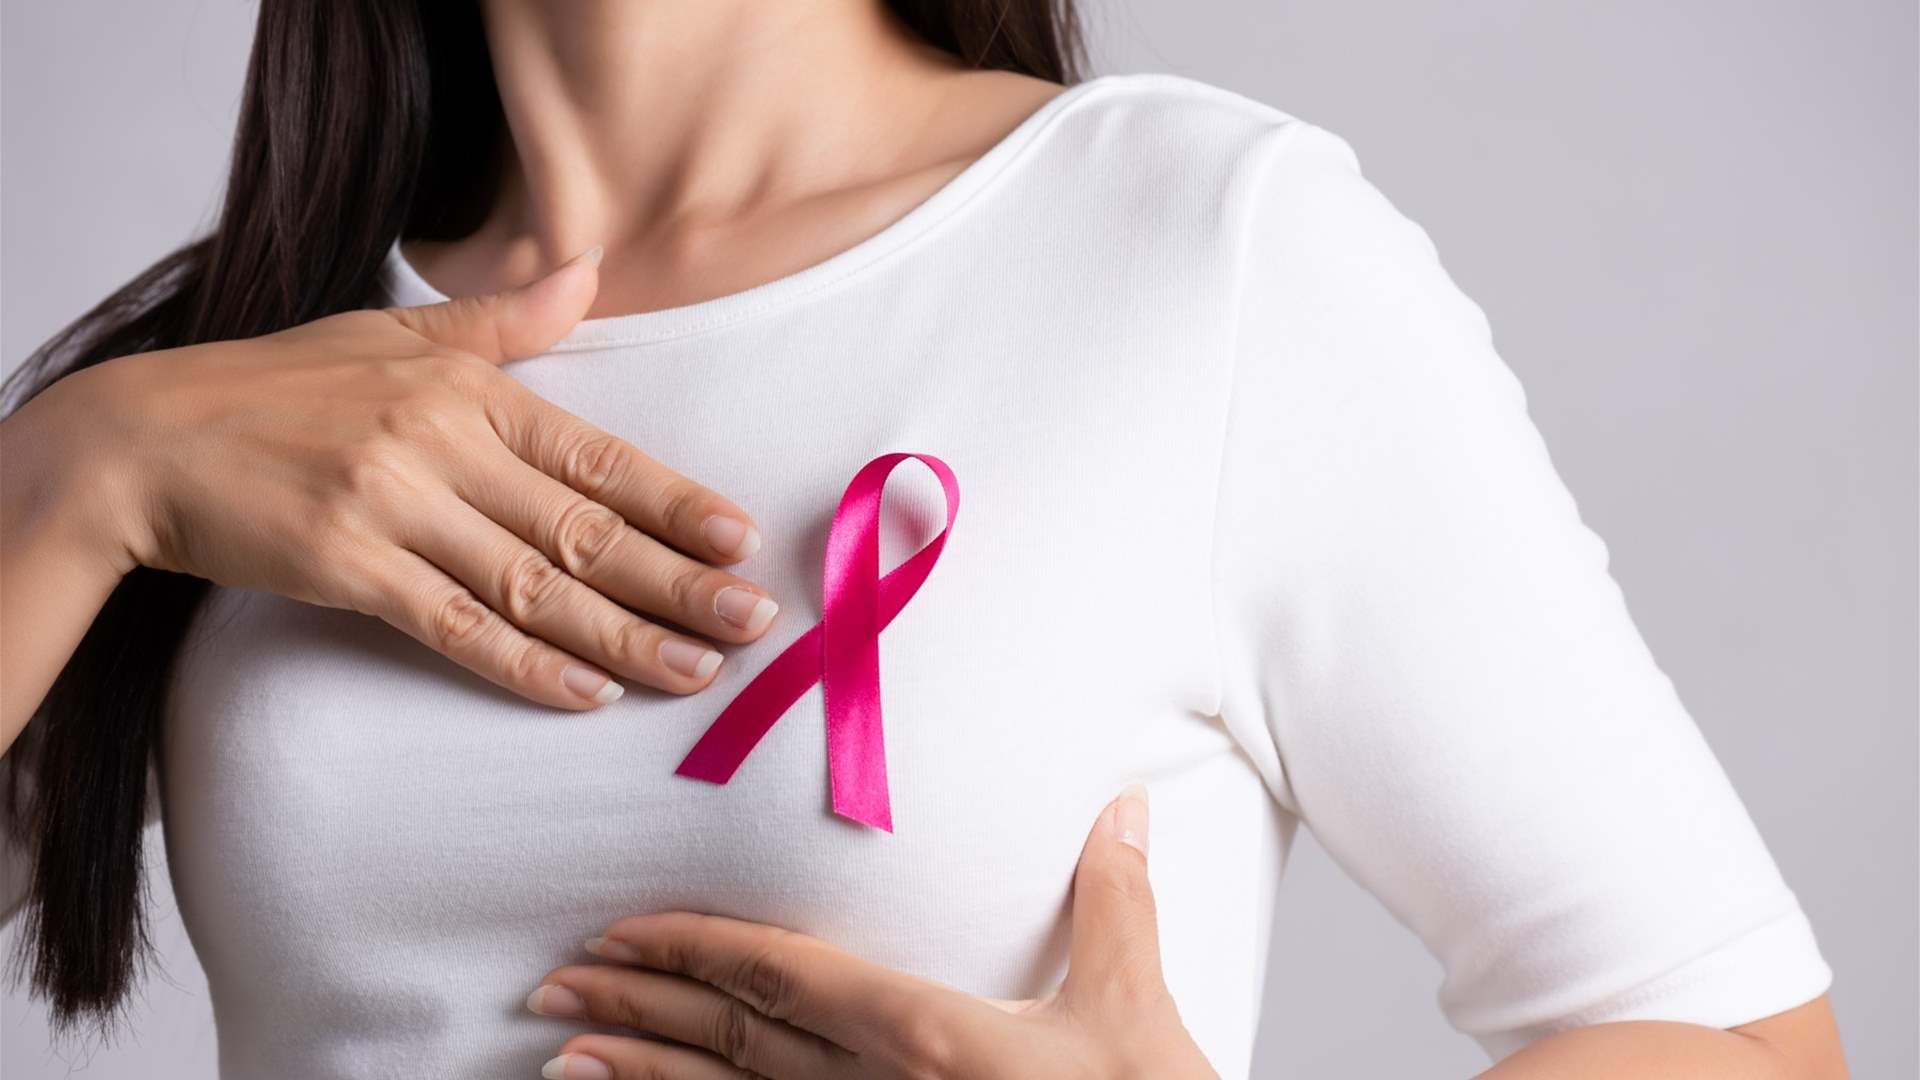 من هم الأشخاص الأكثر عرضة للإصابة بسرطان الثدي؟